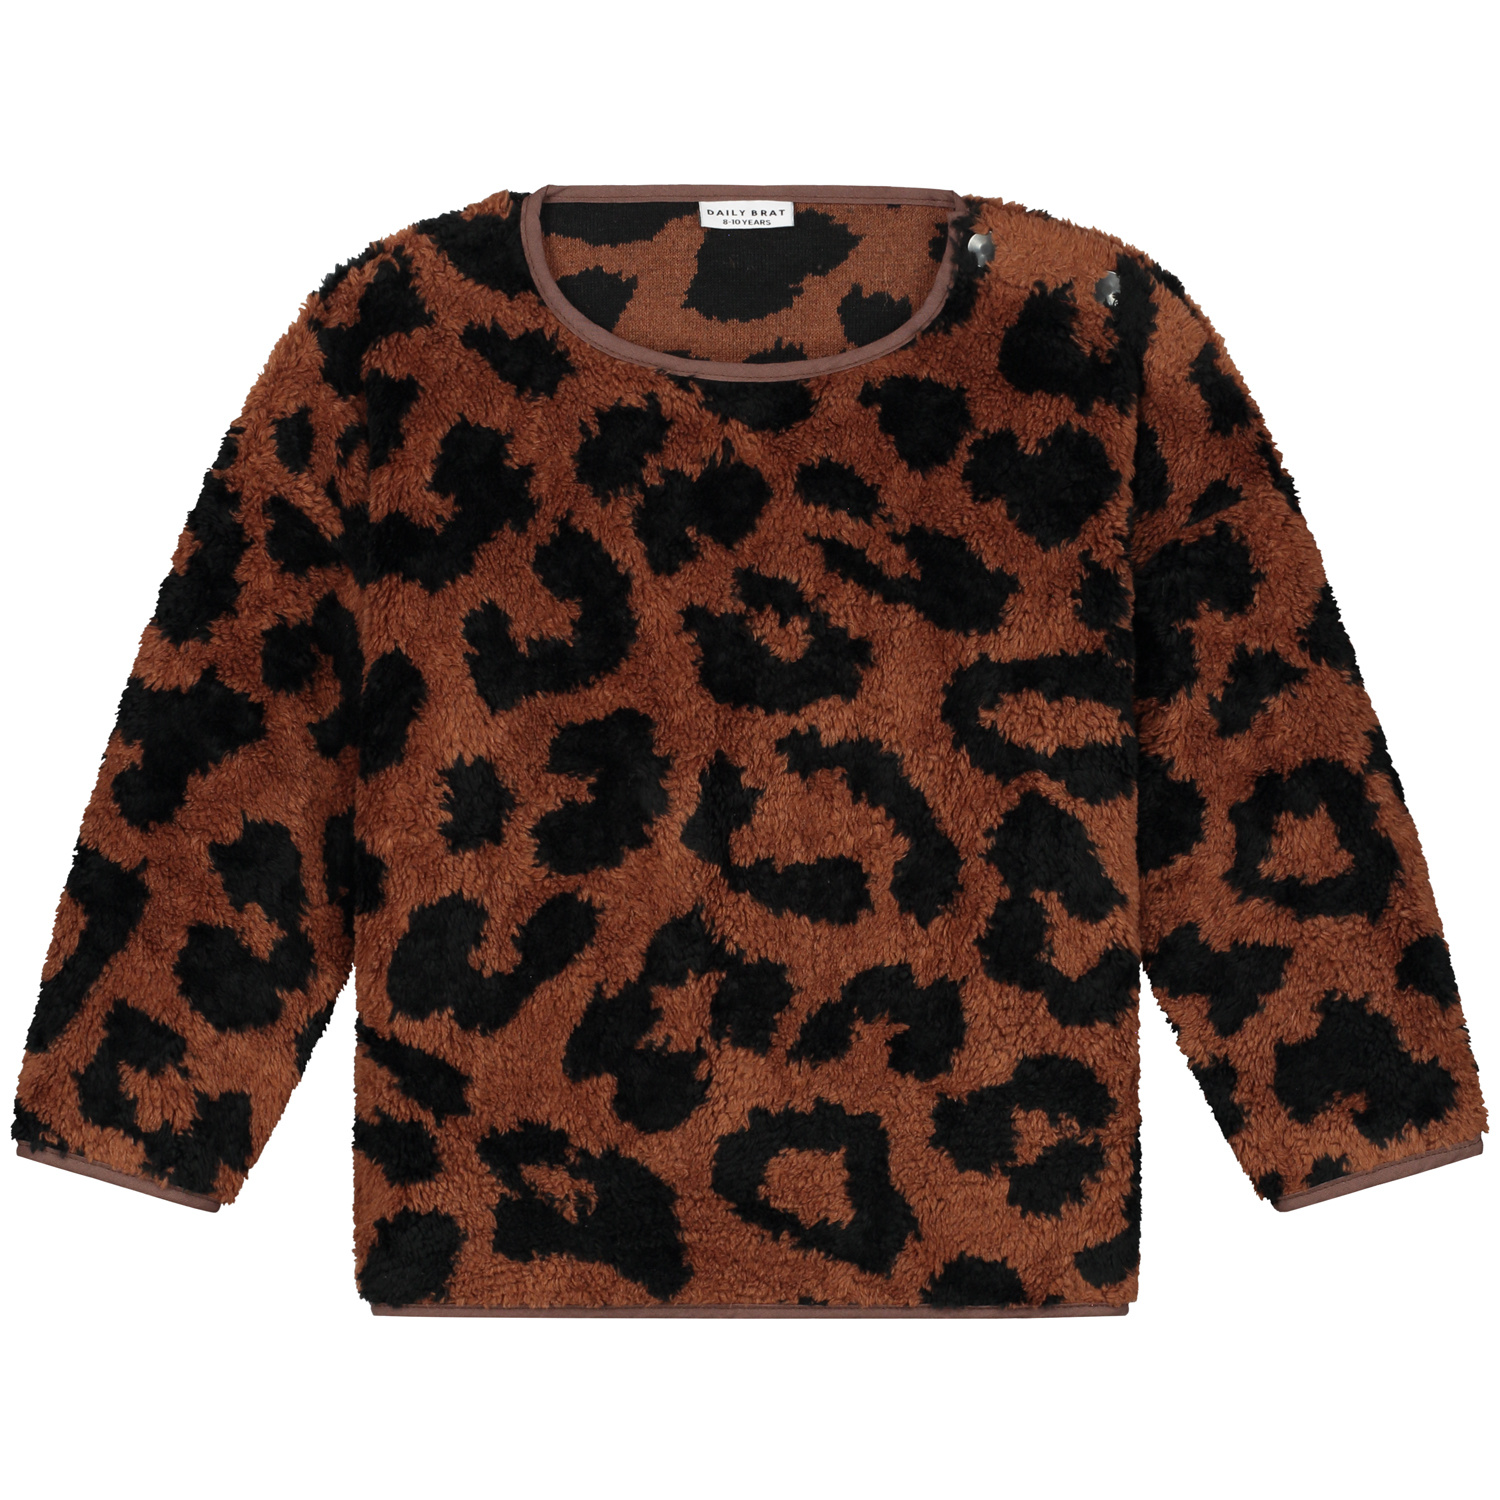 Daily Brat - Fluffy teddy leopard sweater | shop je bij POMMELOE - POMMELOE